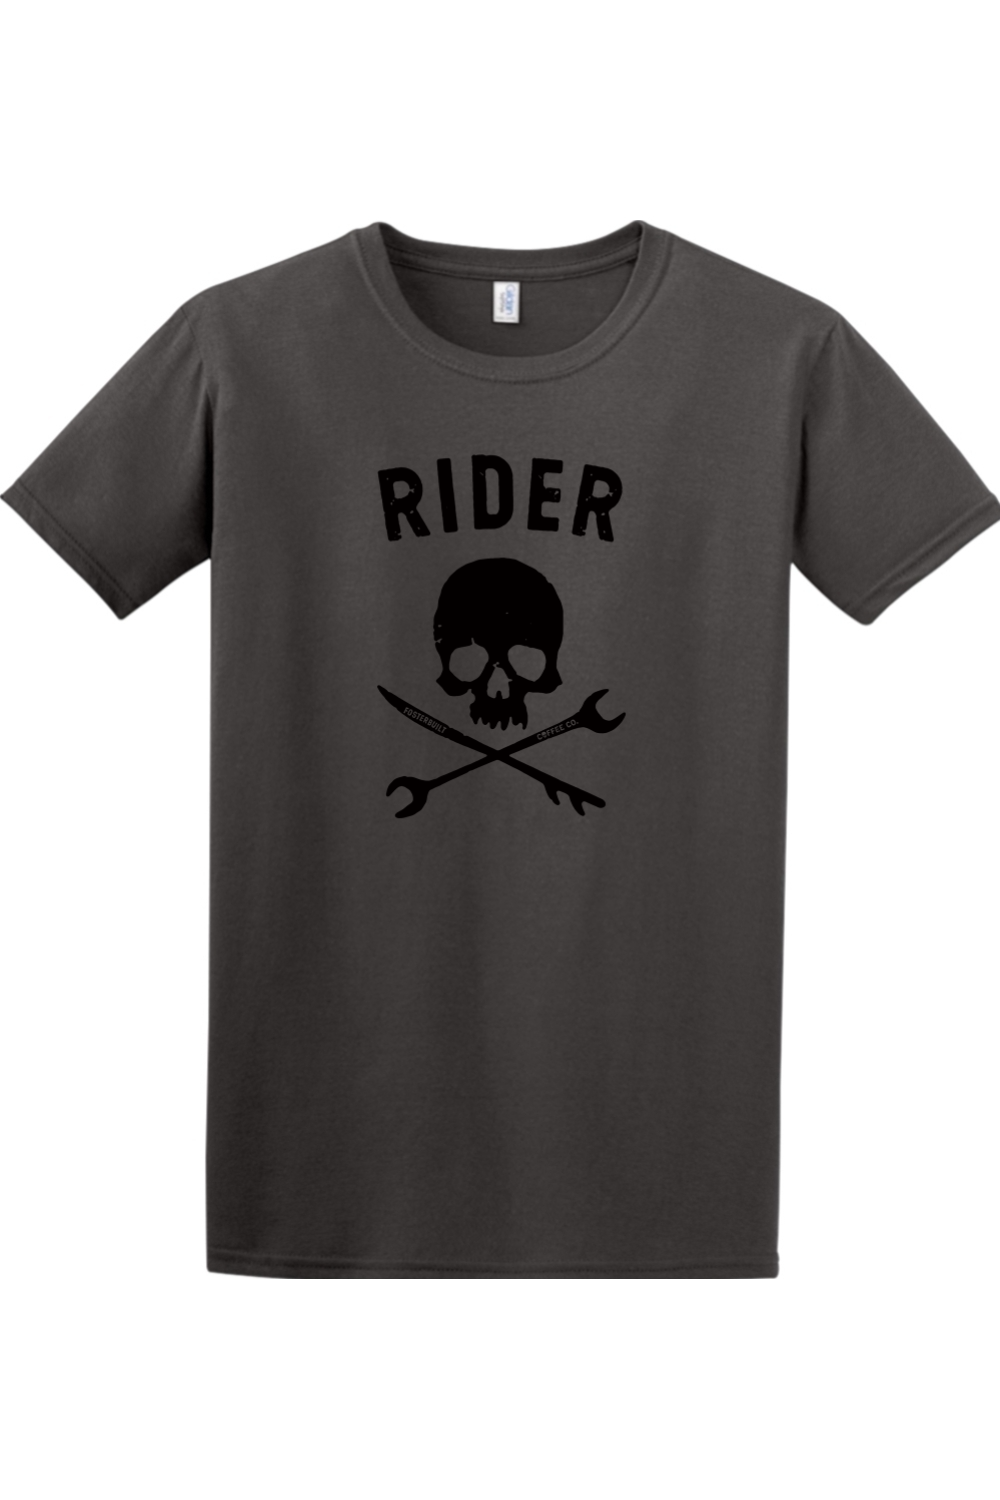 RIDER - Mens T-Shirt